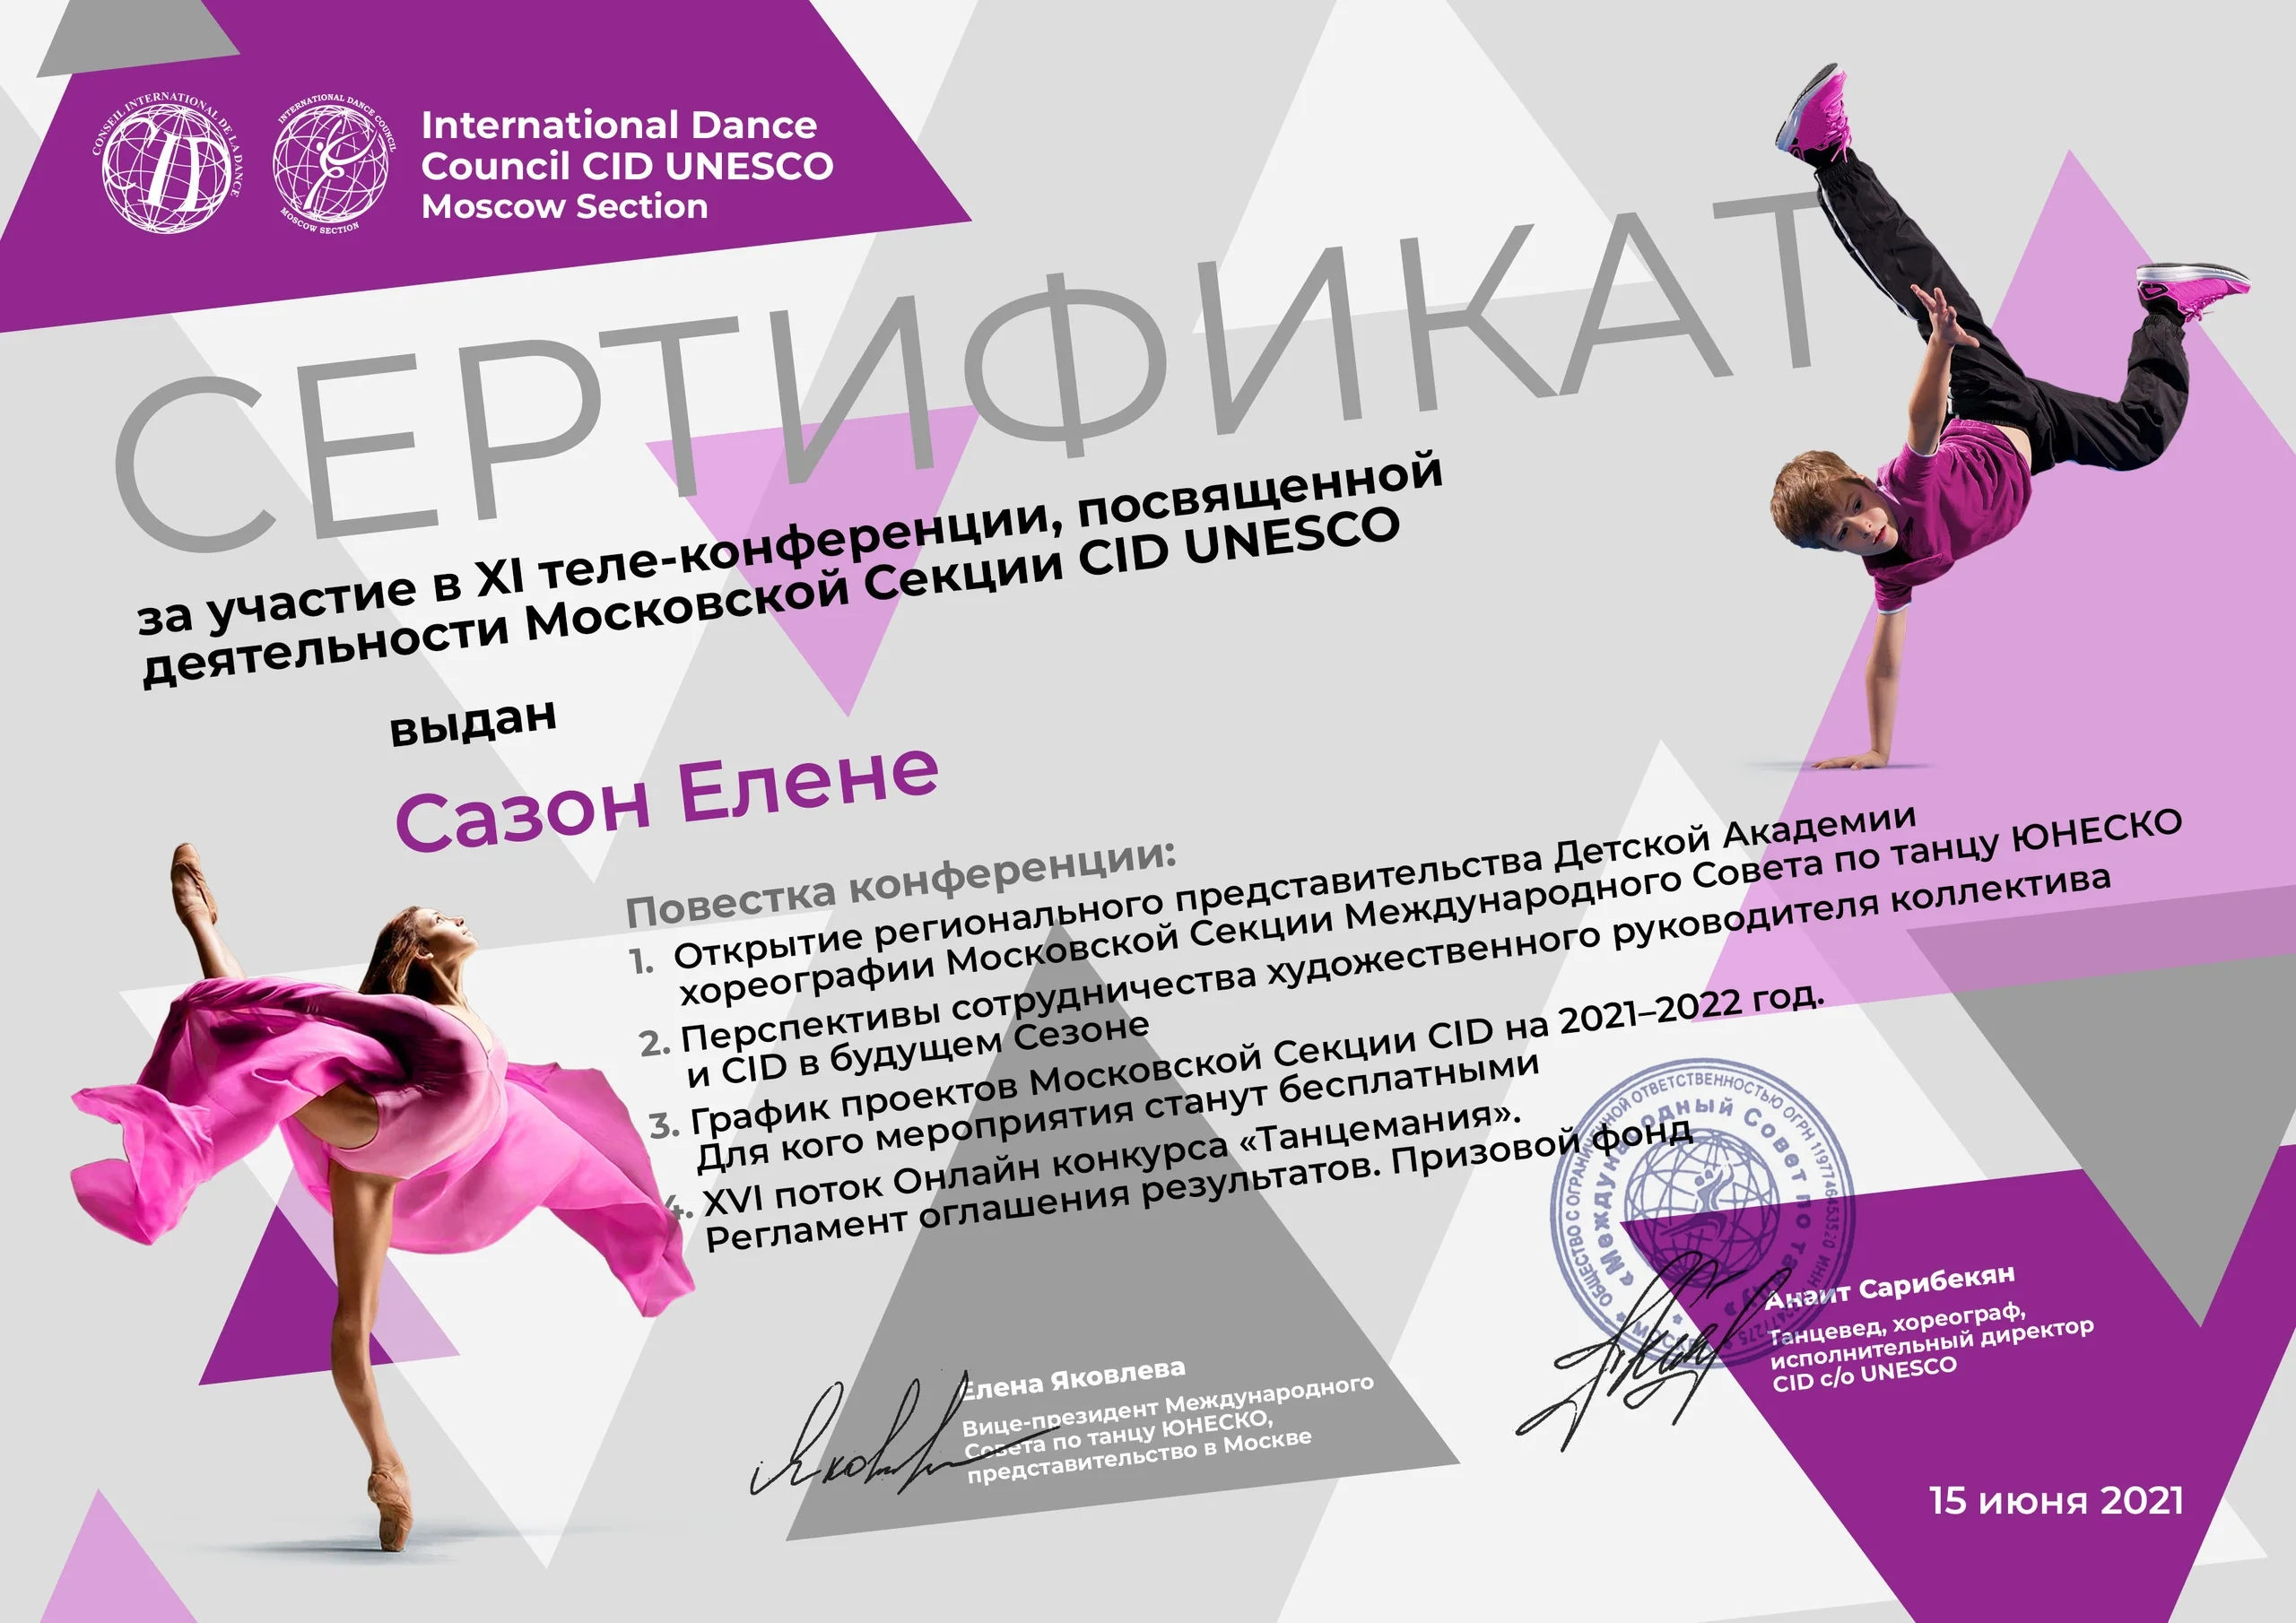 XI теле-конференция, посвященная деятельности Московской Секции CID UNESCO